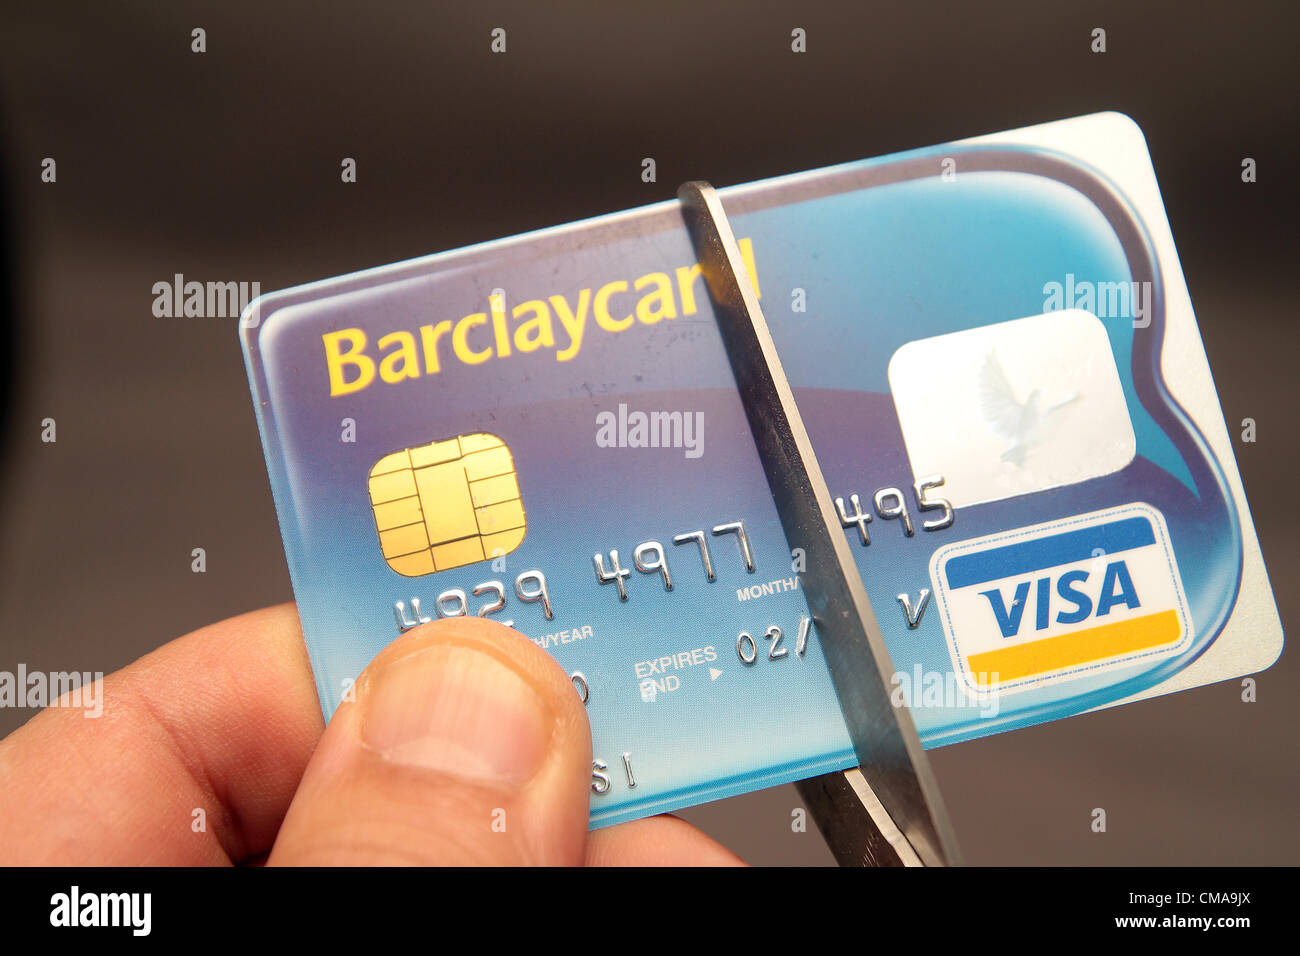 Mock-up einer Barclaycard Kreditkarte wird halbiert aus Protest gegen Barclays Bank Libor-Skandal im Vereinigten Königreich Stockfoto